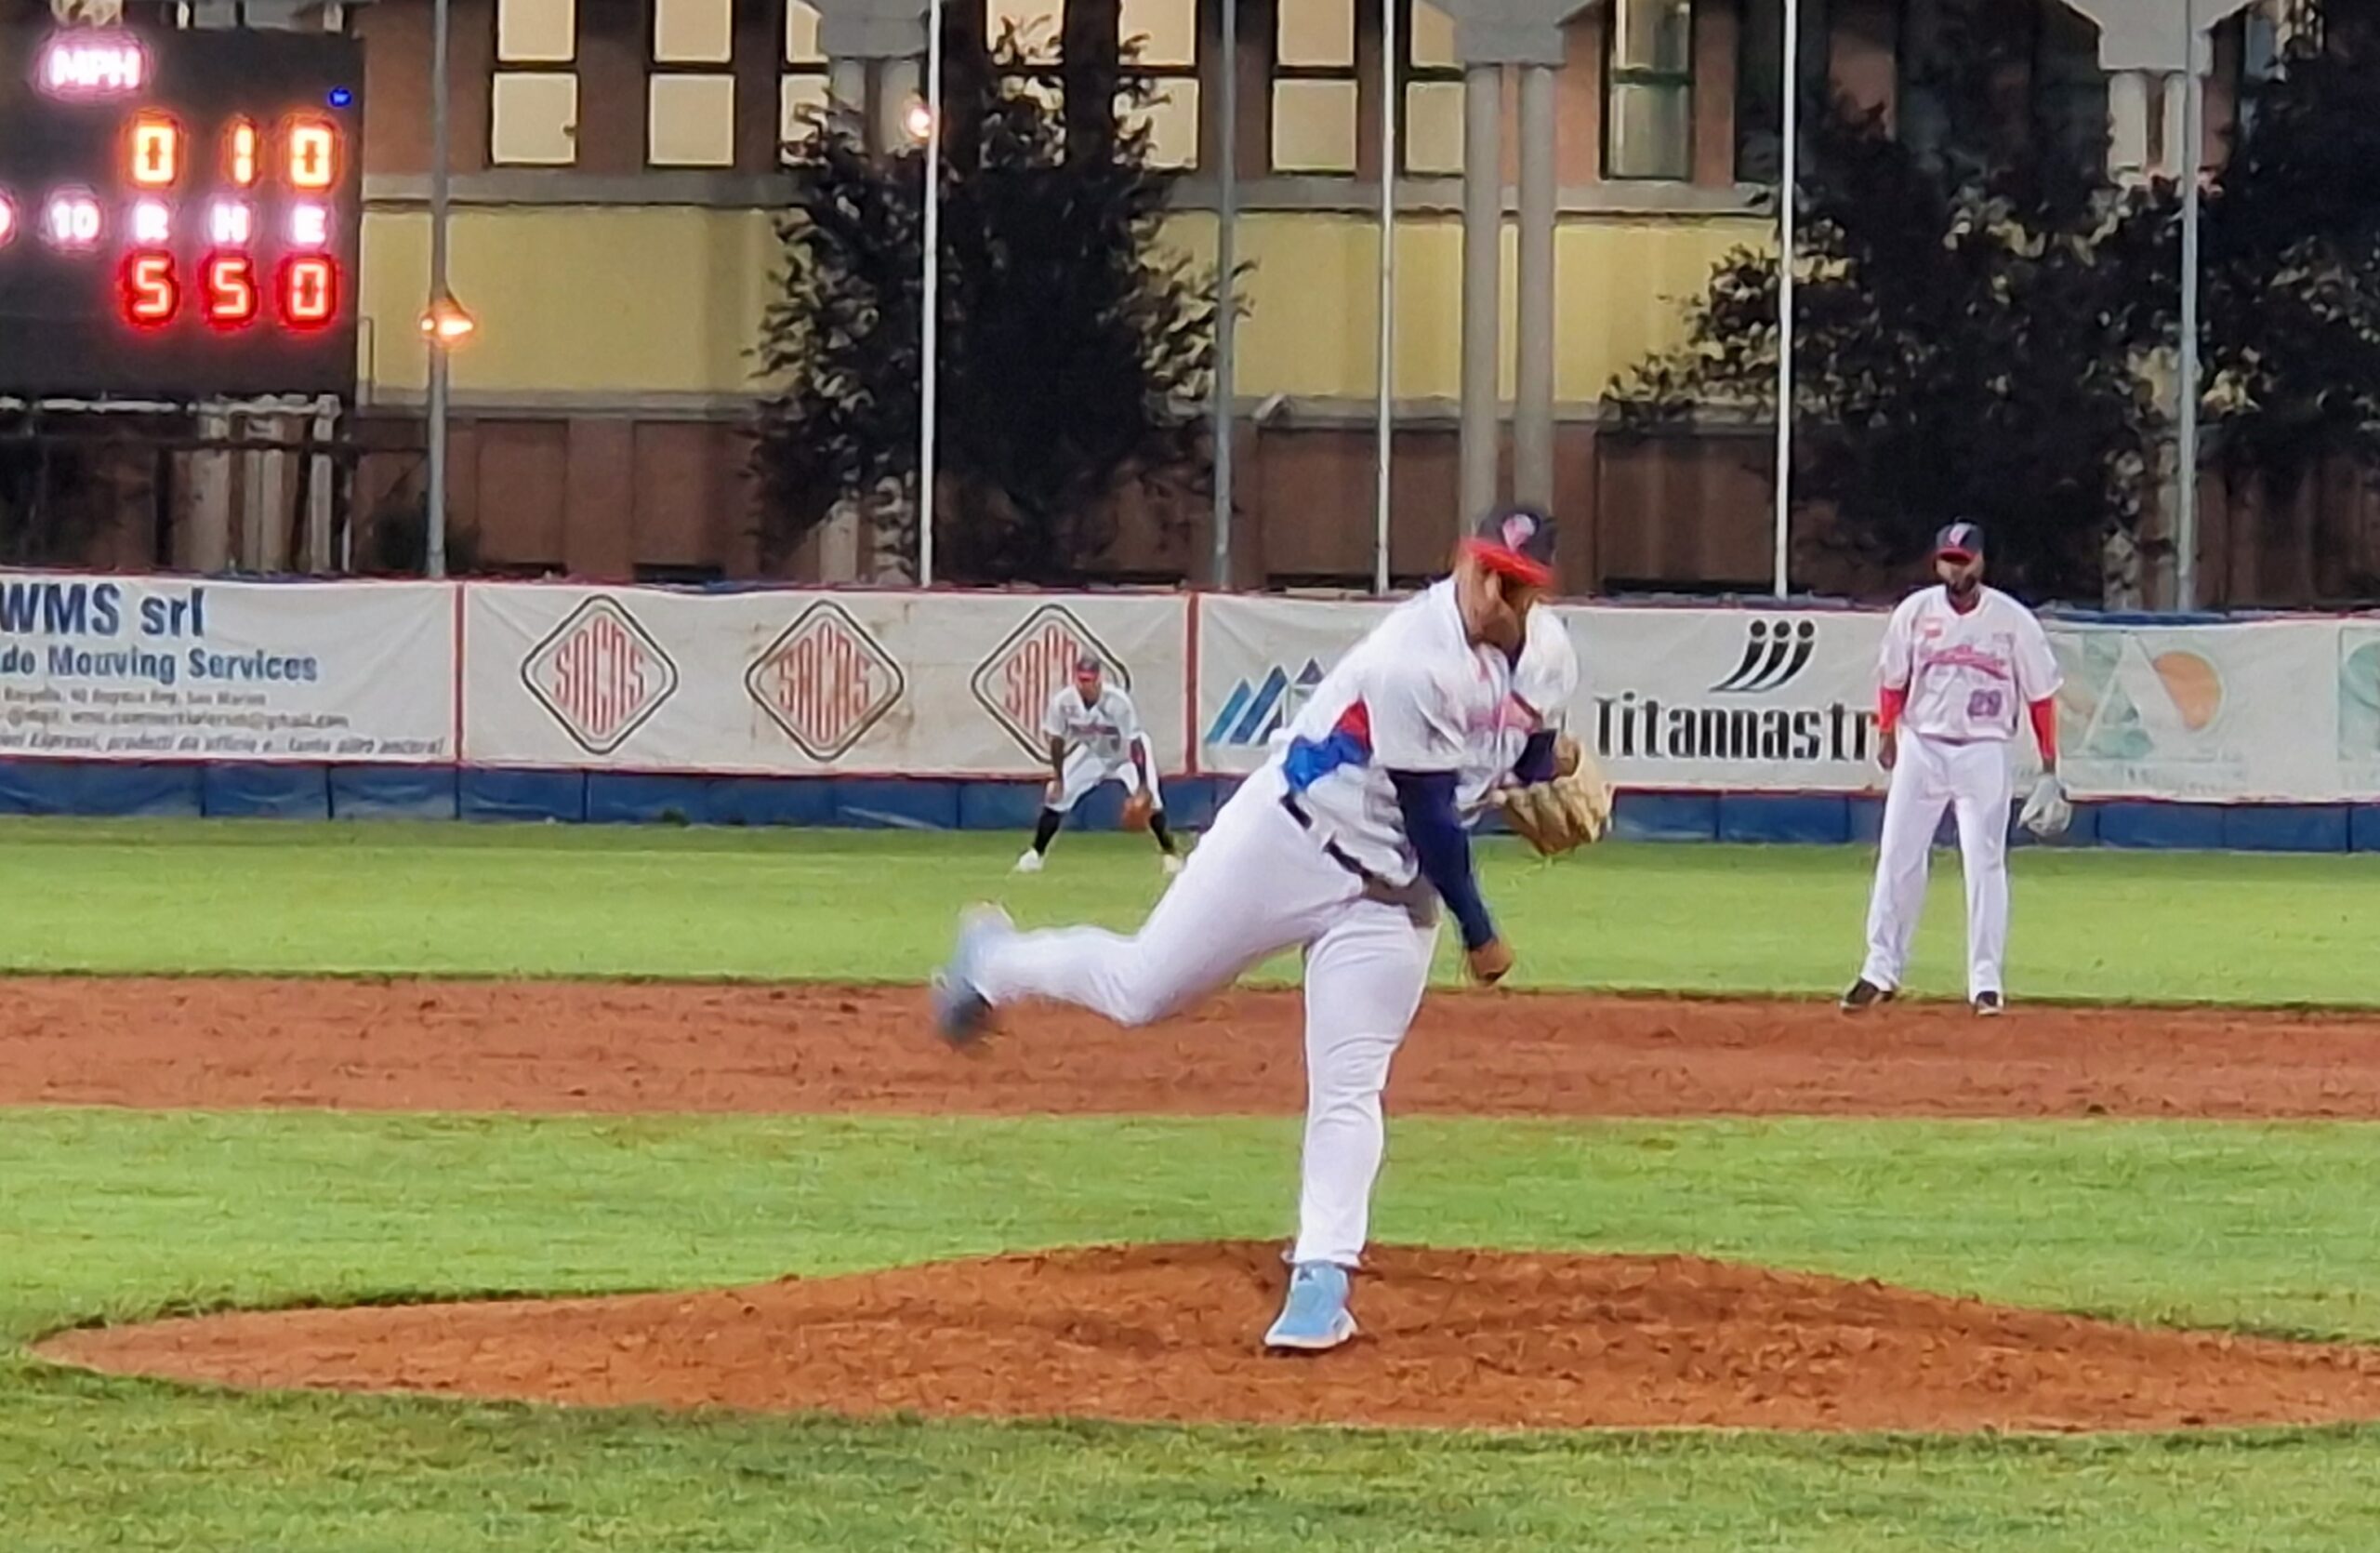 Baseball, San Marino inizia un nuovo campionato nel migliore dei modi